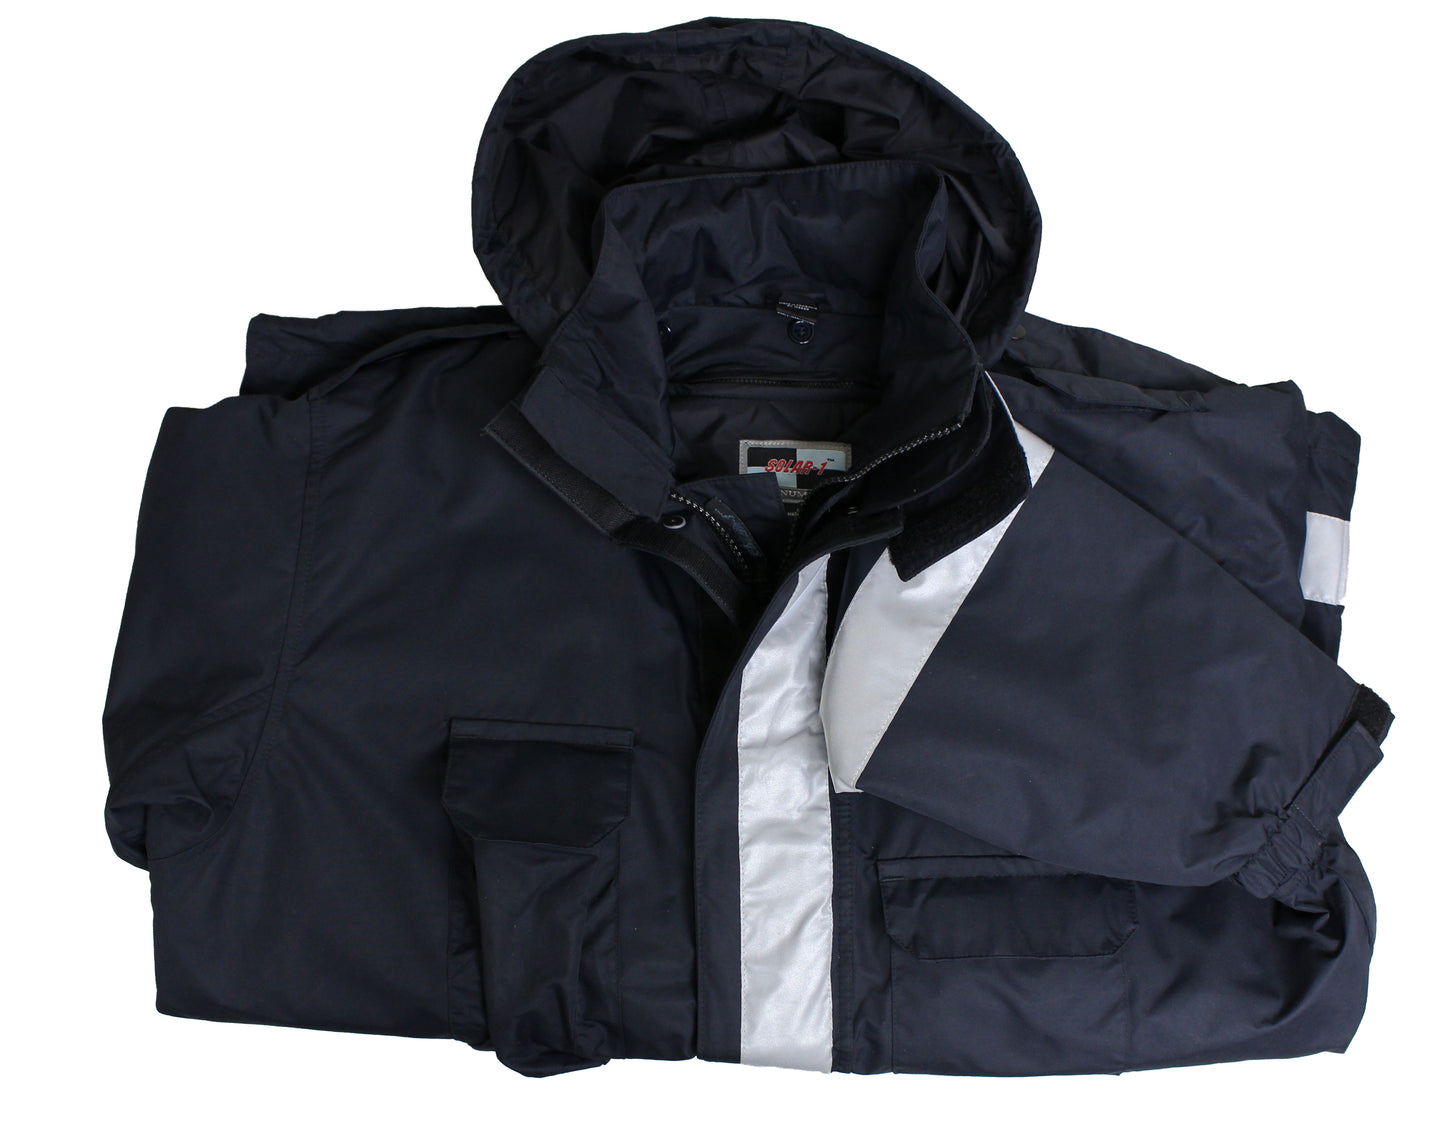 Solar 1 Clothing EMS Jacket with Bloodborne Pathogen Protection EM01